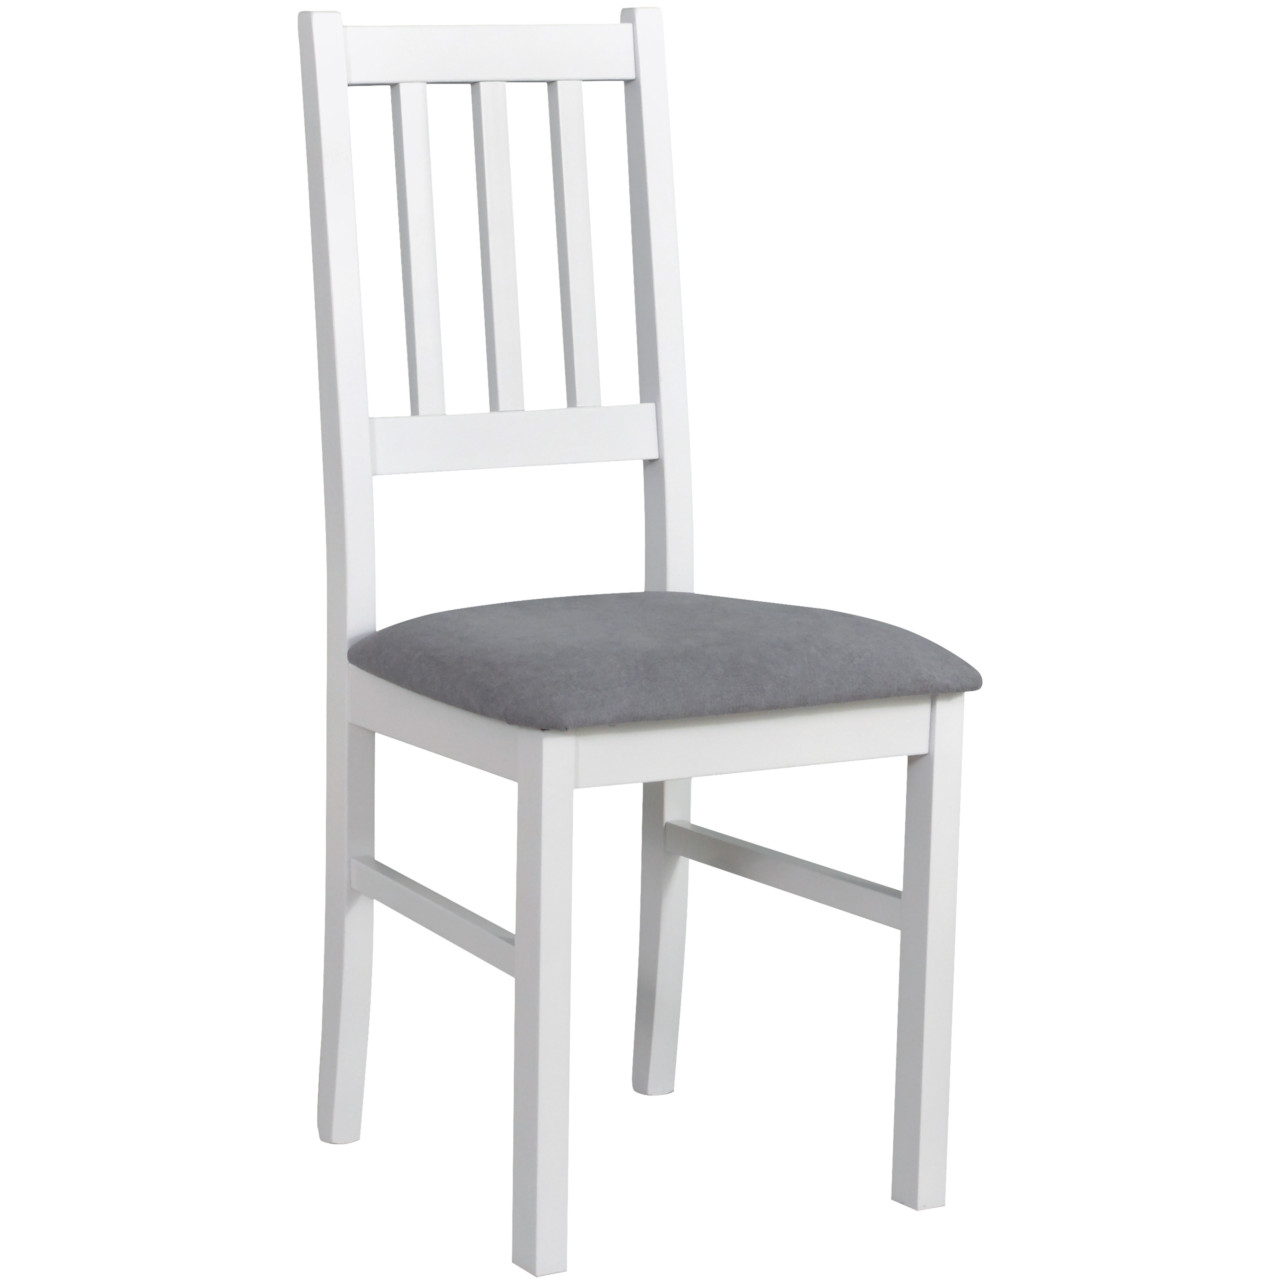 Chair BOS 4 white / 20B